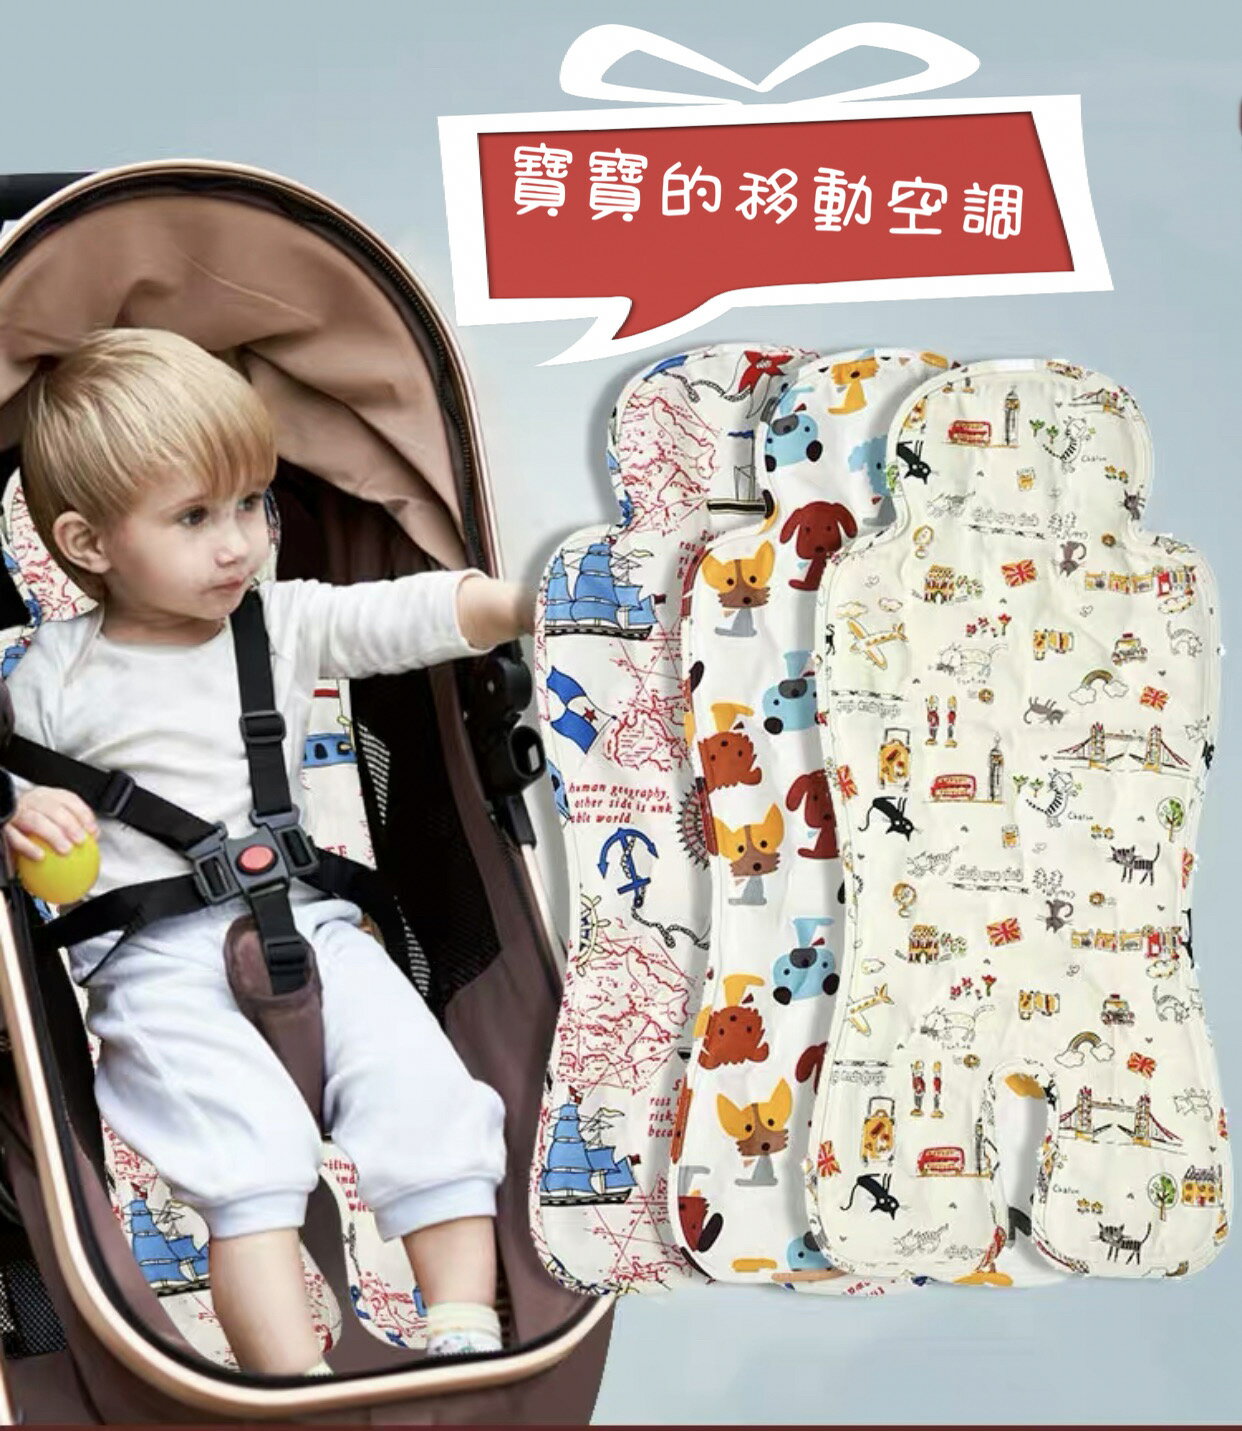 涼墊 寶寶汽座涼墊 兒童推車涼墊 涼蓆 嬰兒凝膠冰珠涼墊 寶寶移動空調